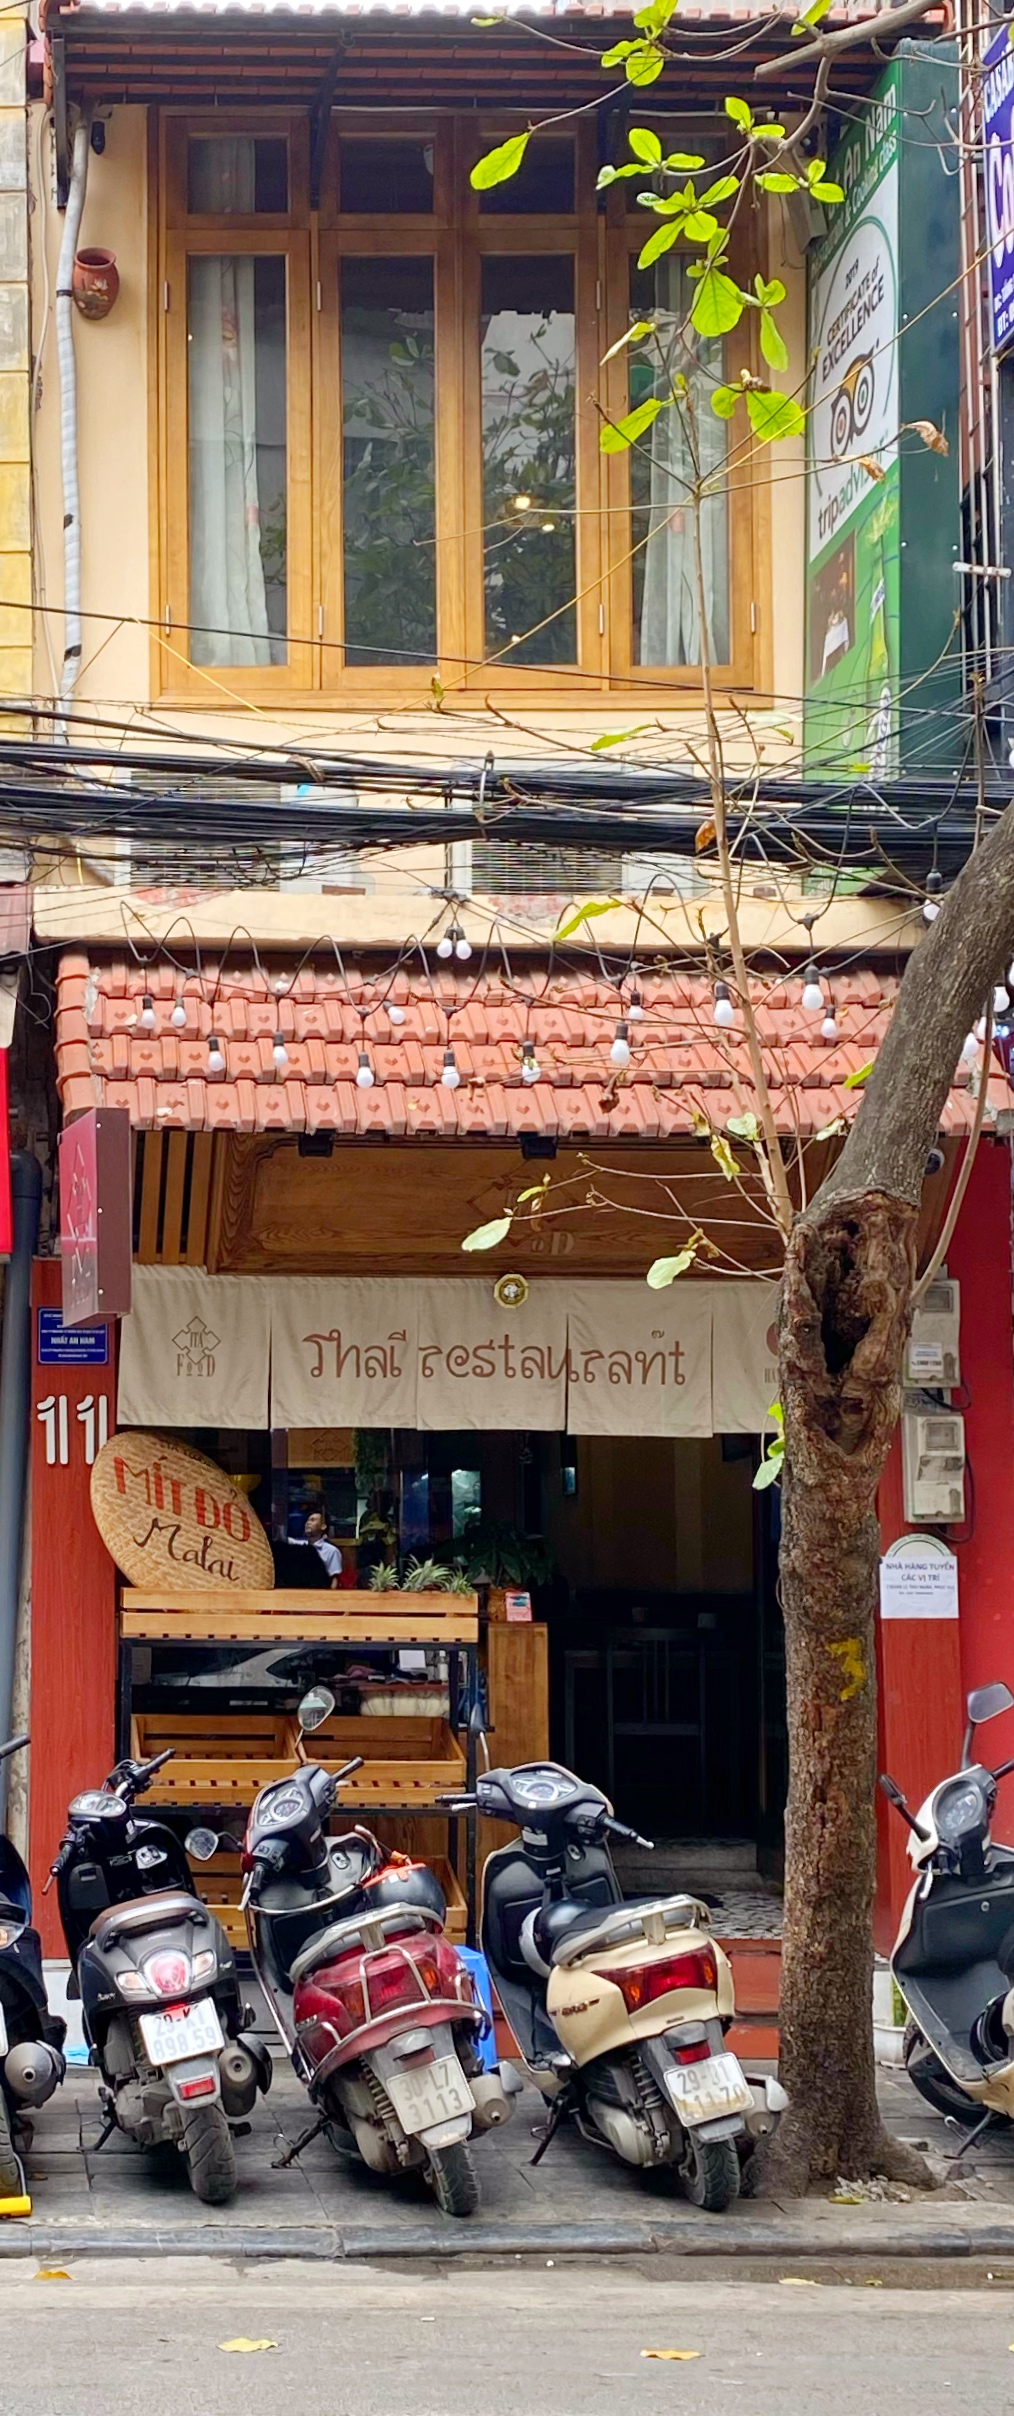 ITA Thai restaurant